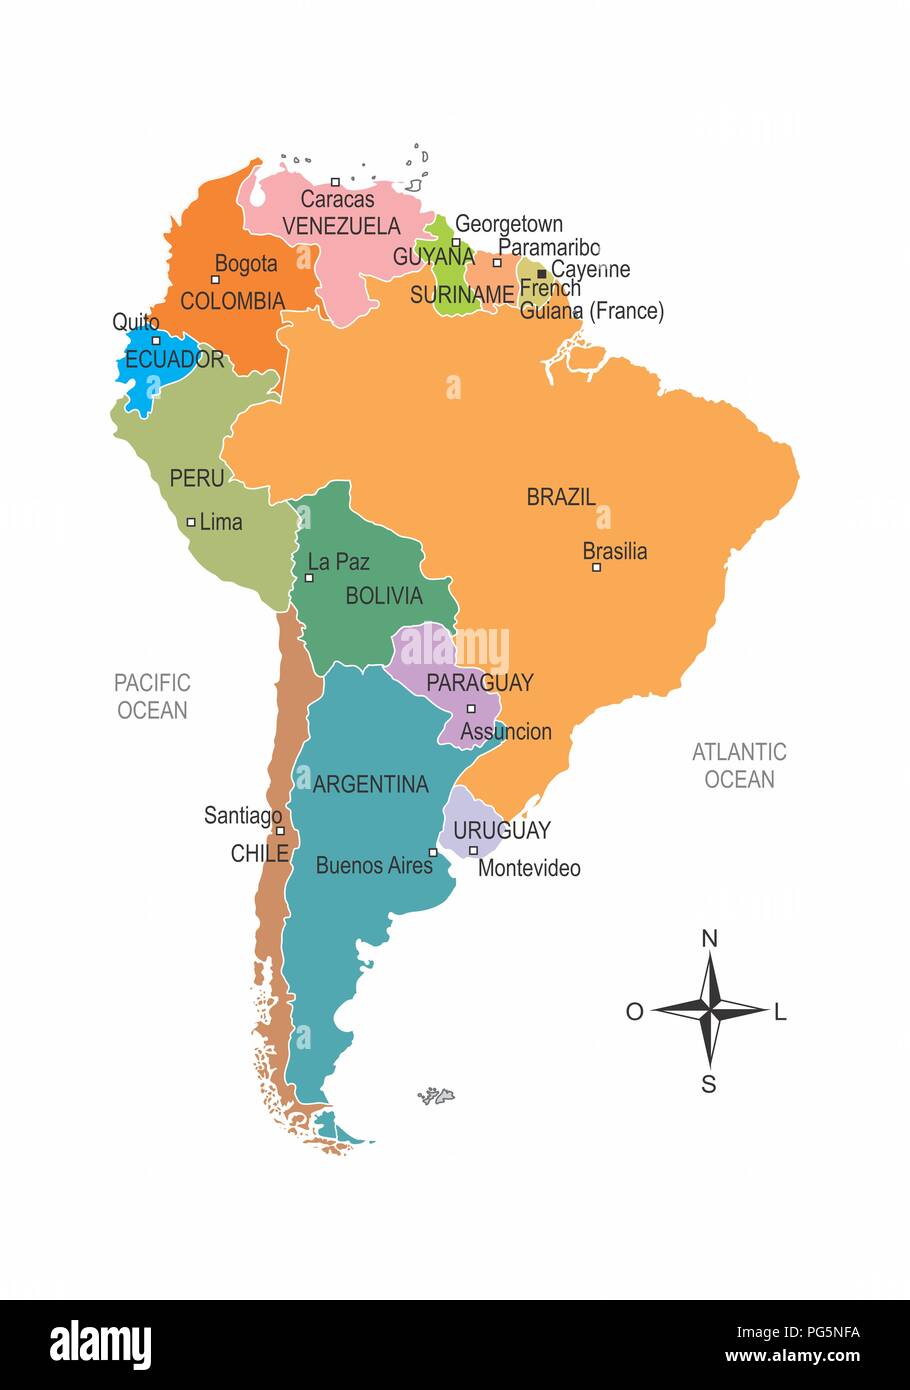 Уругвай столица на карте. Уругвай на карте Южной Америки. Монтевидео на карте Южной Америки. Каракас на карте Южной Америки. Игуасу на карте Южной Америки.